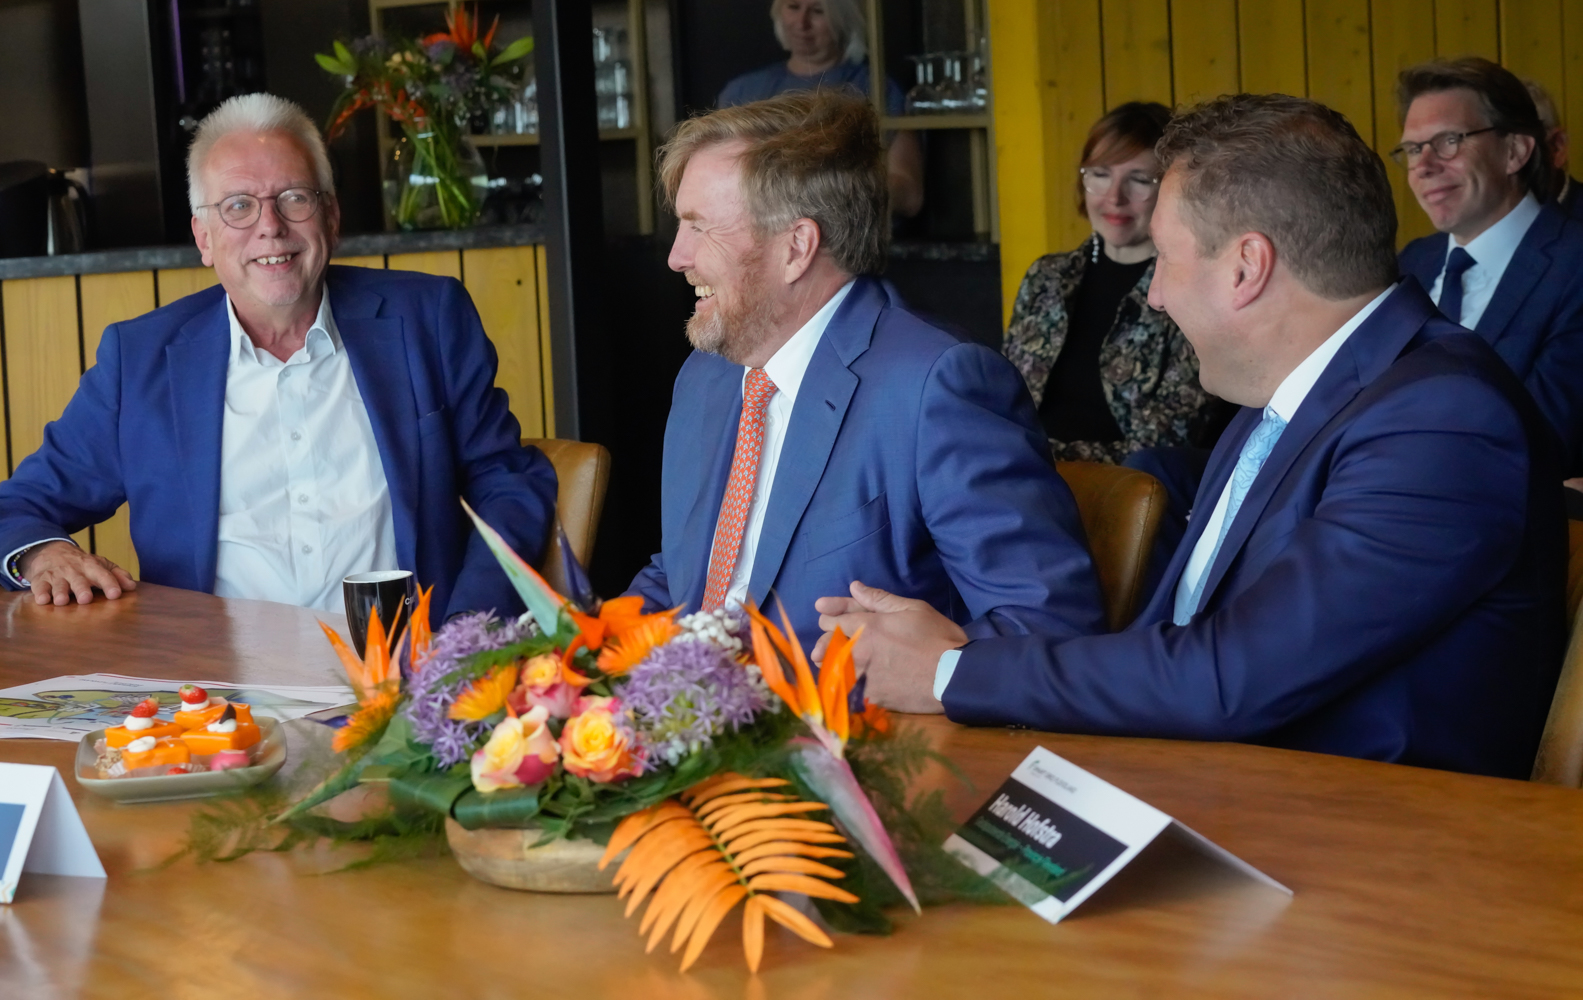 Koning Willem-Alexander in gesprek met wethouder Sjaak Kruis